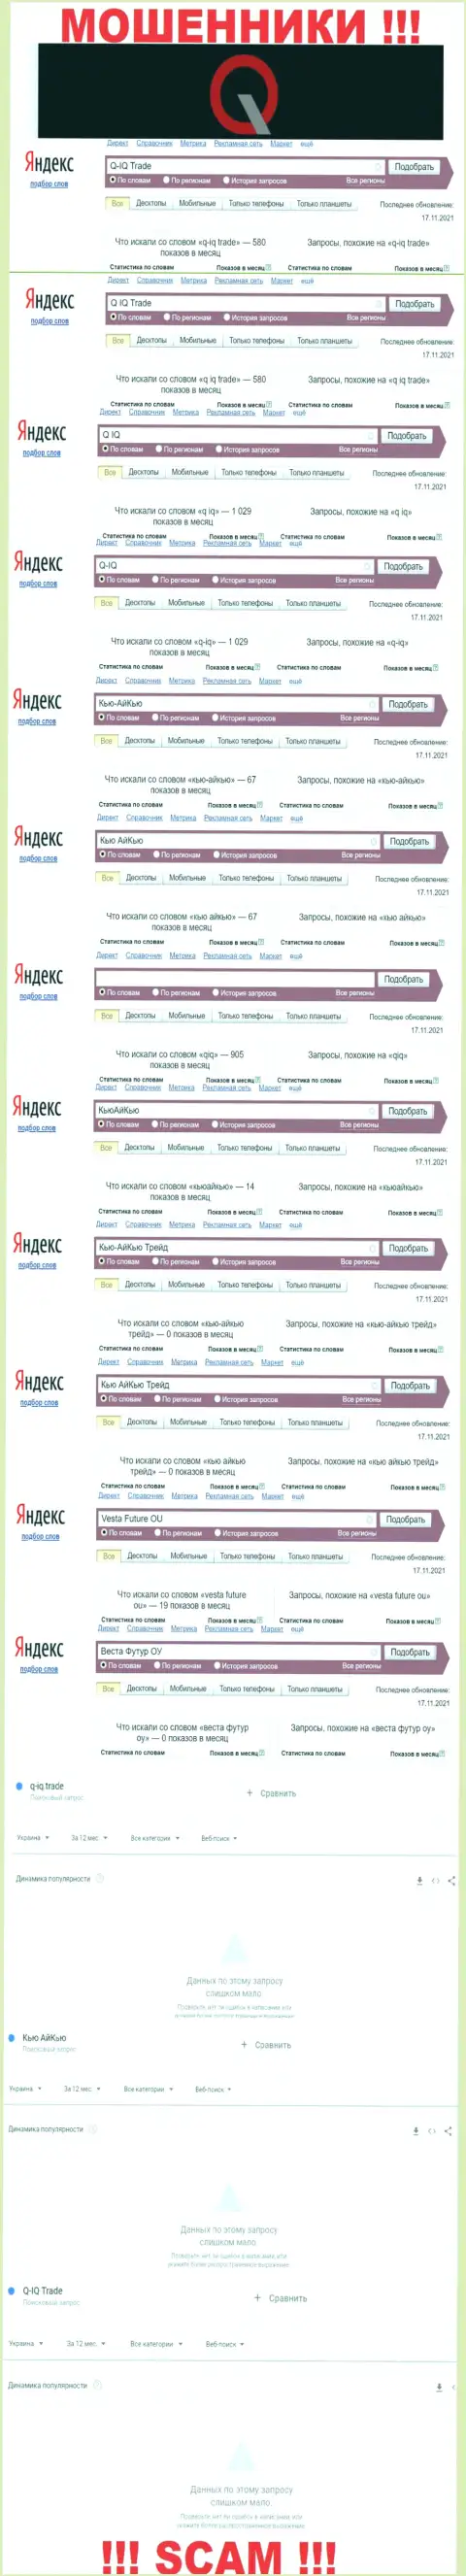 Сколько людей пытались разыскать сведения о КьюАйКью - статистика поисковых запросов по указанной компании